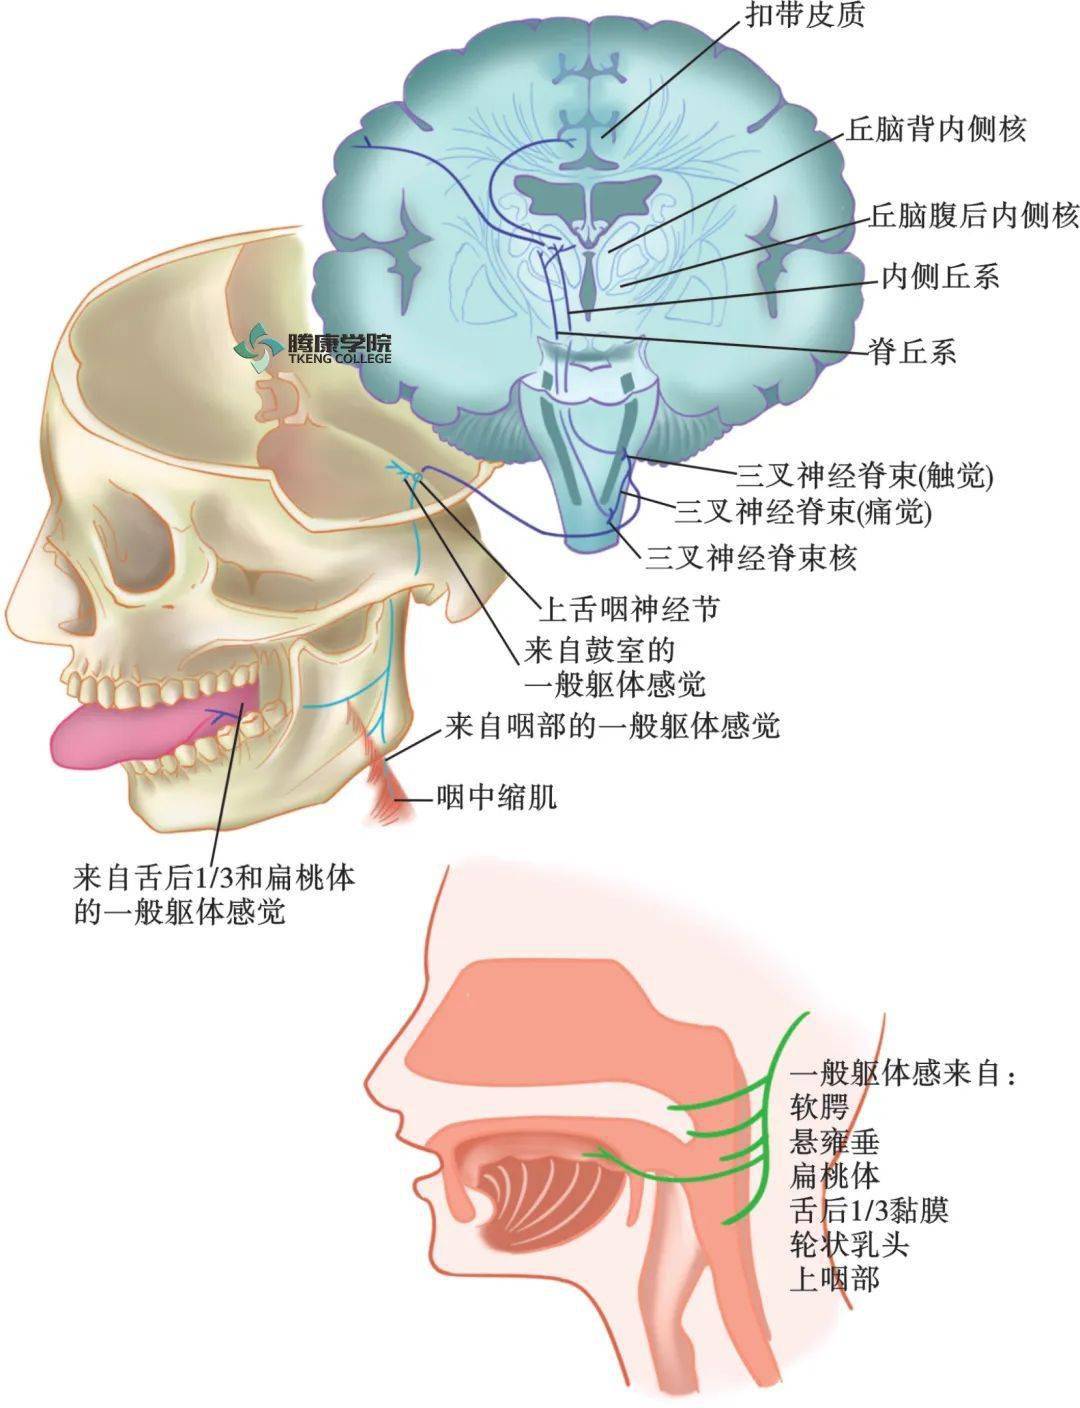 舌咽神经解剖图片